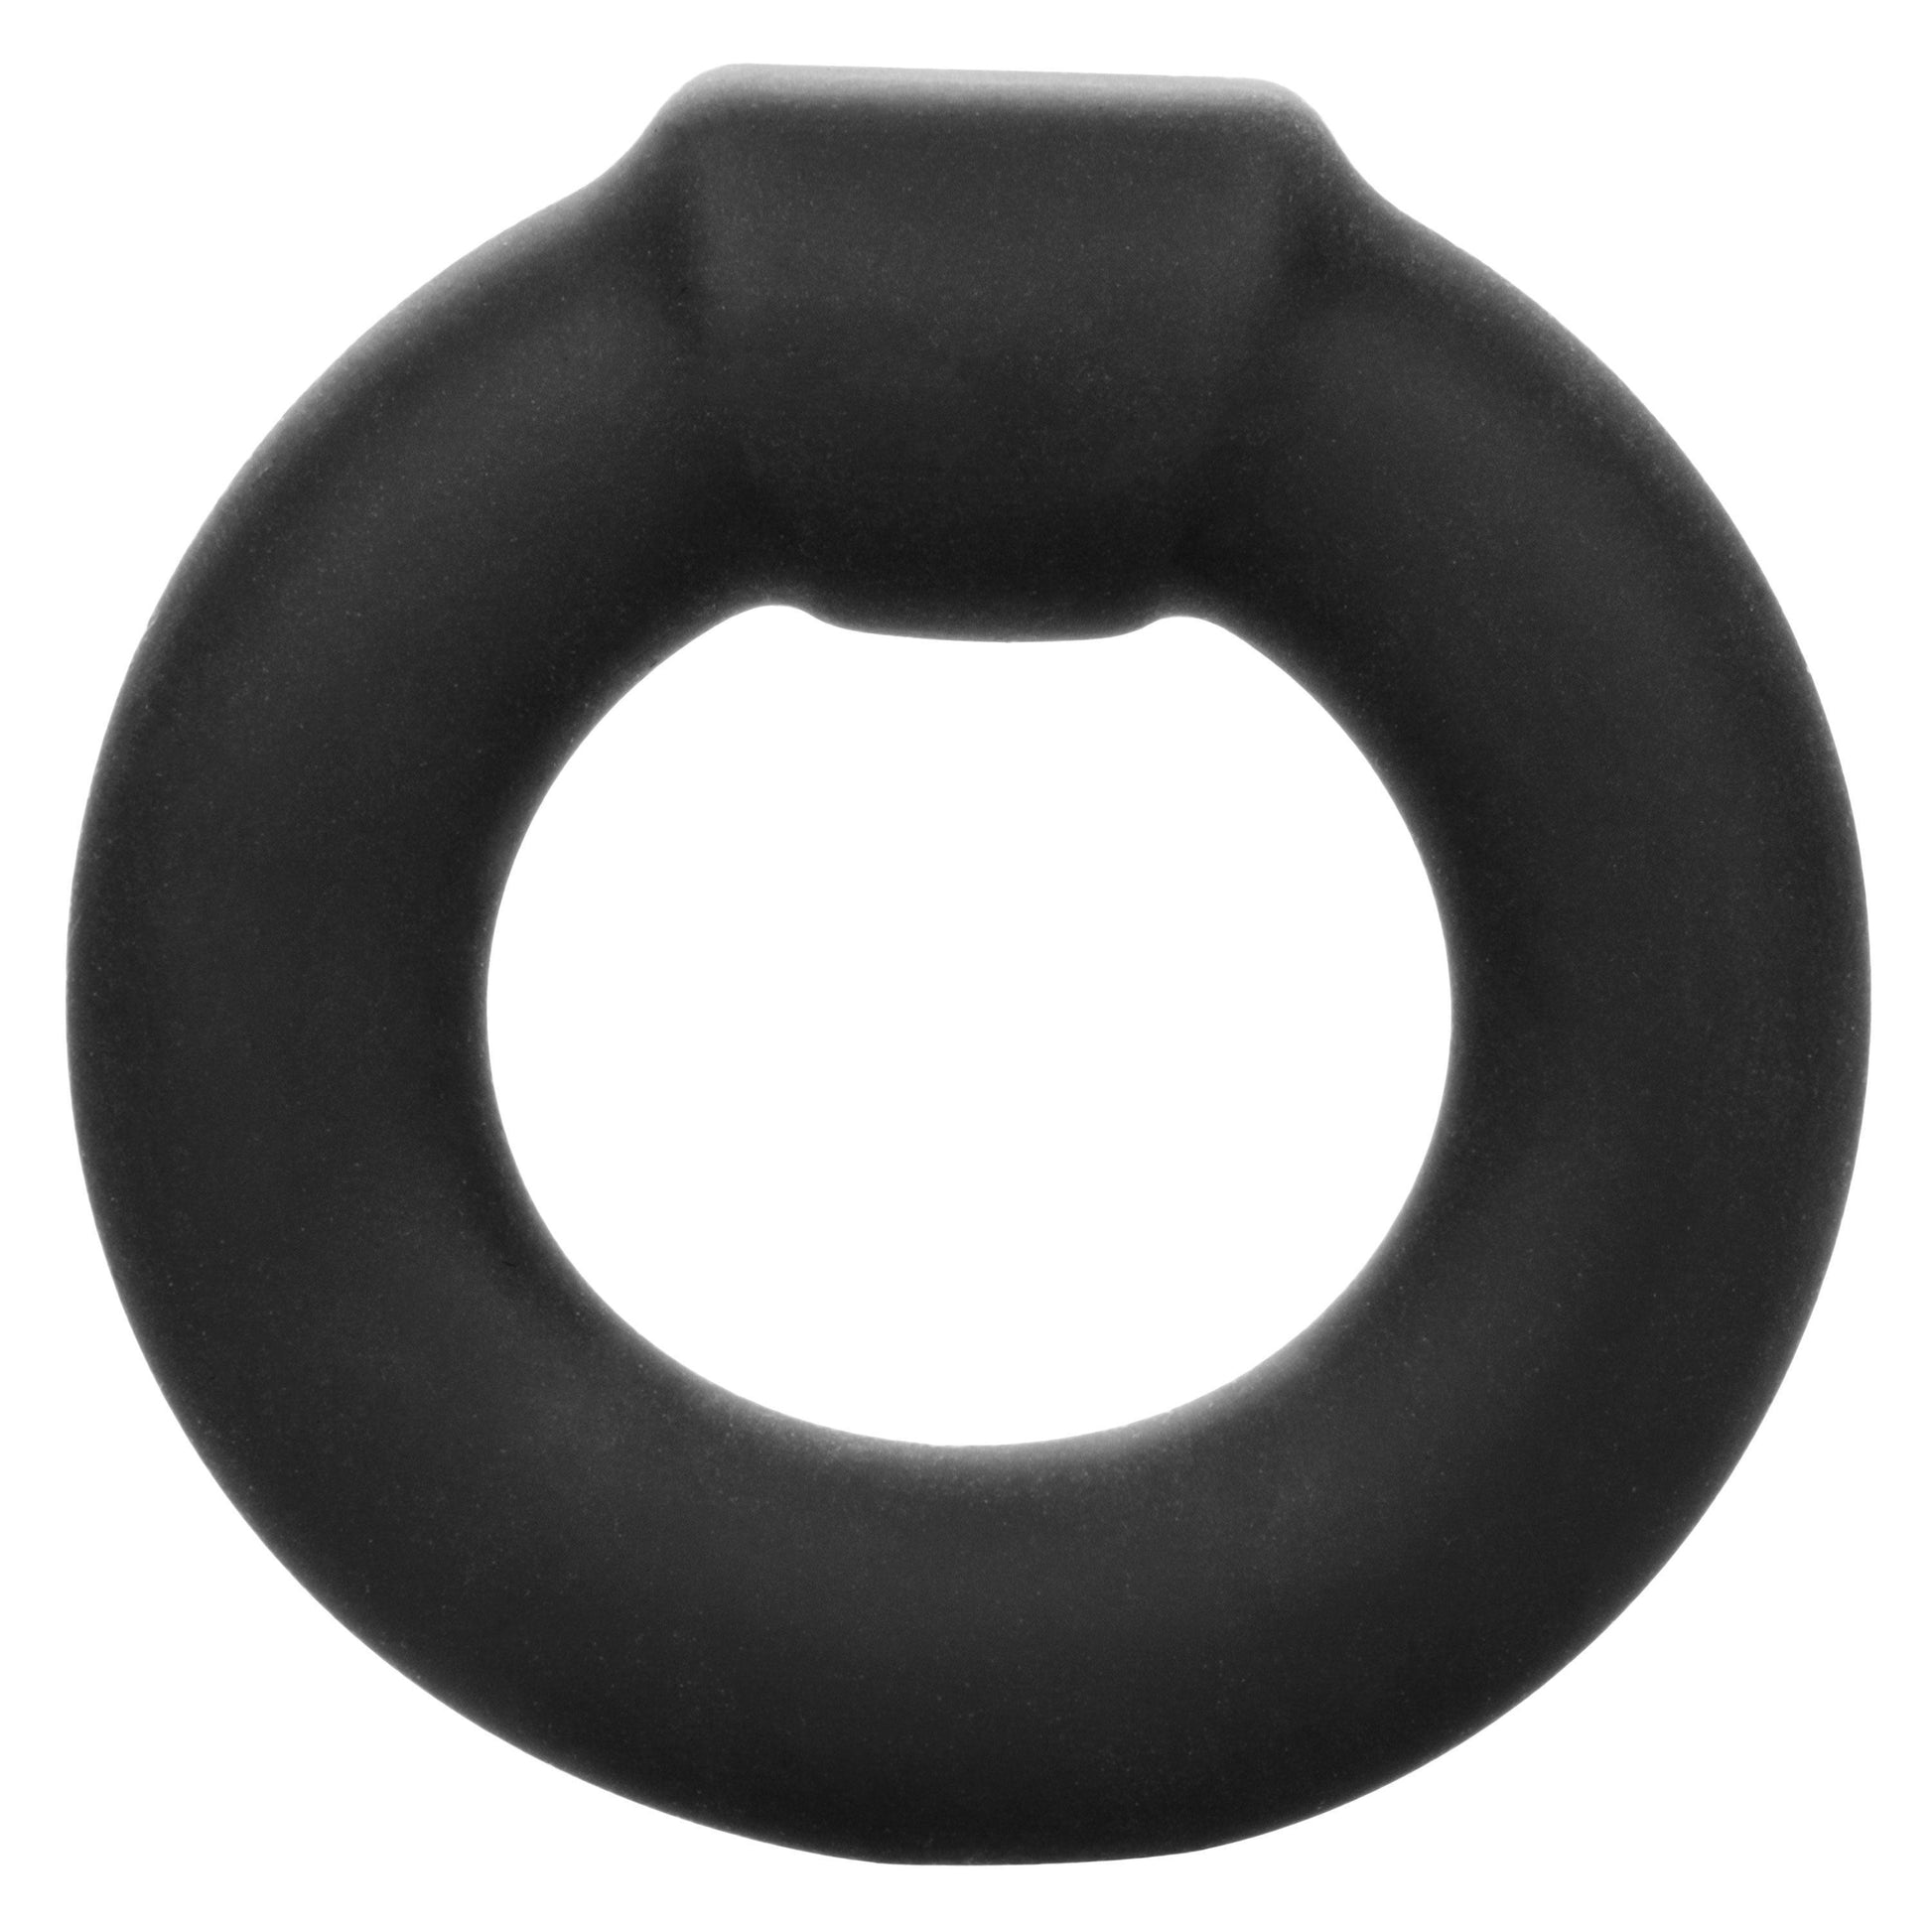 Alpha Liquid Silicone Optimum Ring - Black - My Sex Toy Hub